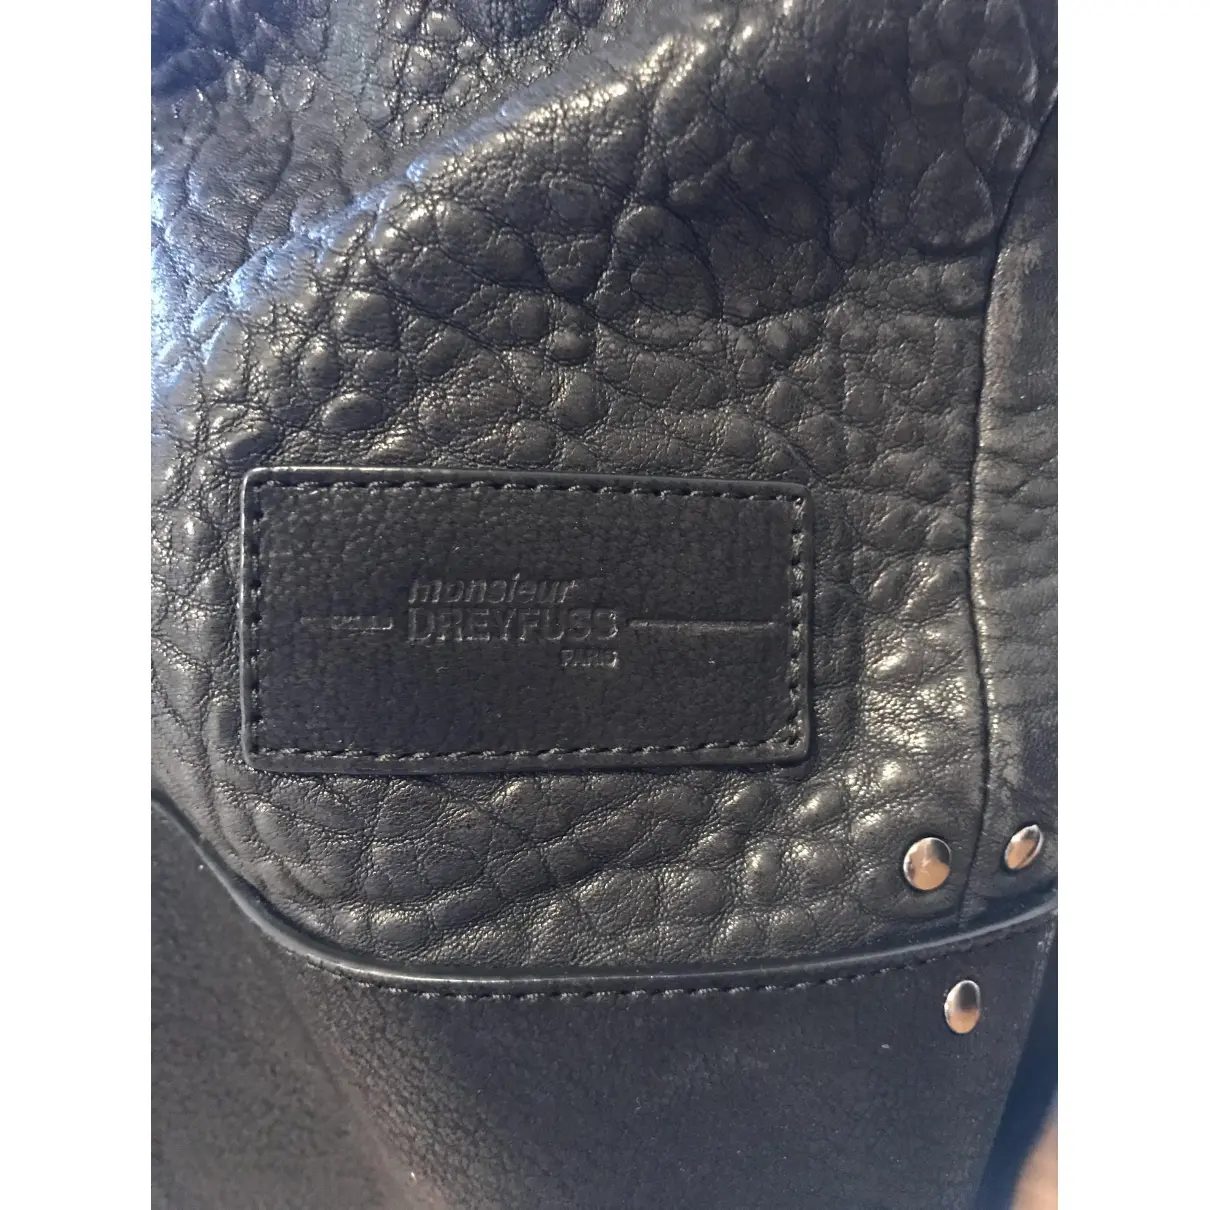 Buy Jerome Dreyfuss Leather bag online